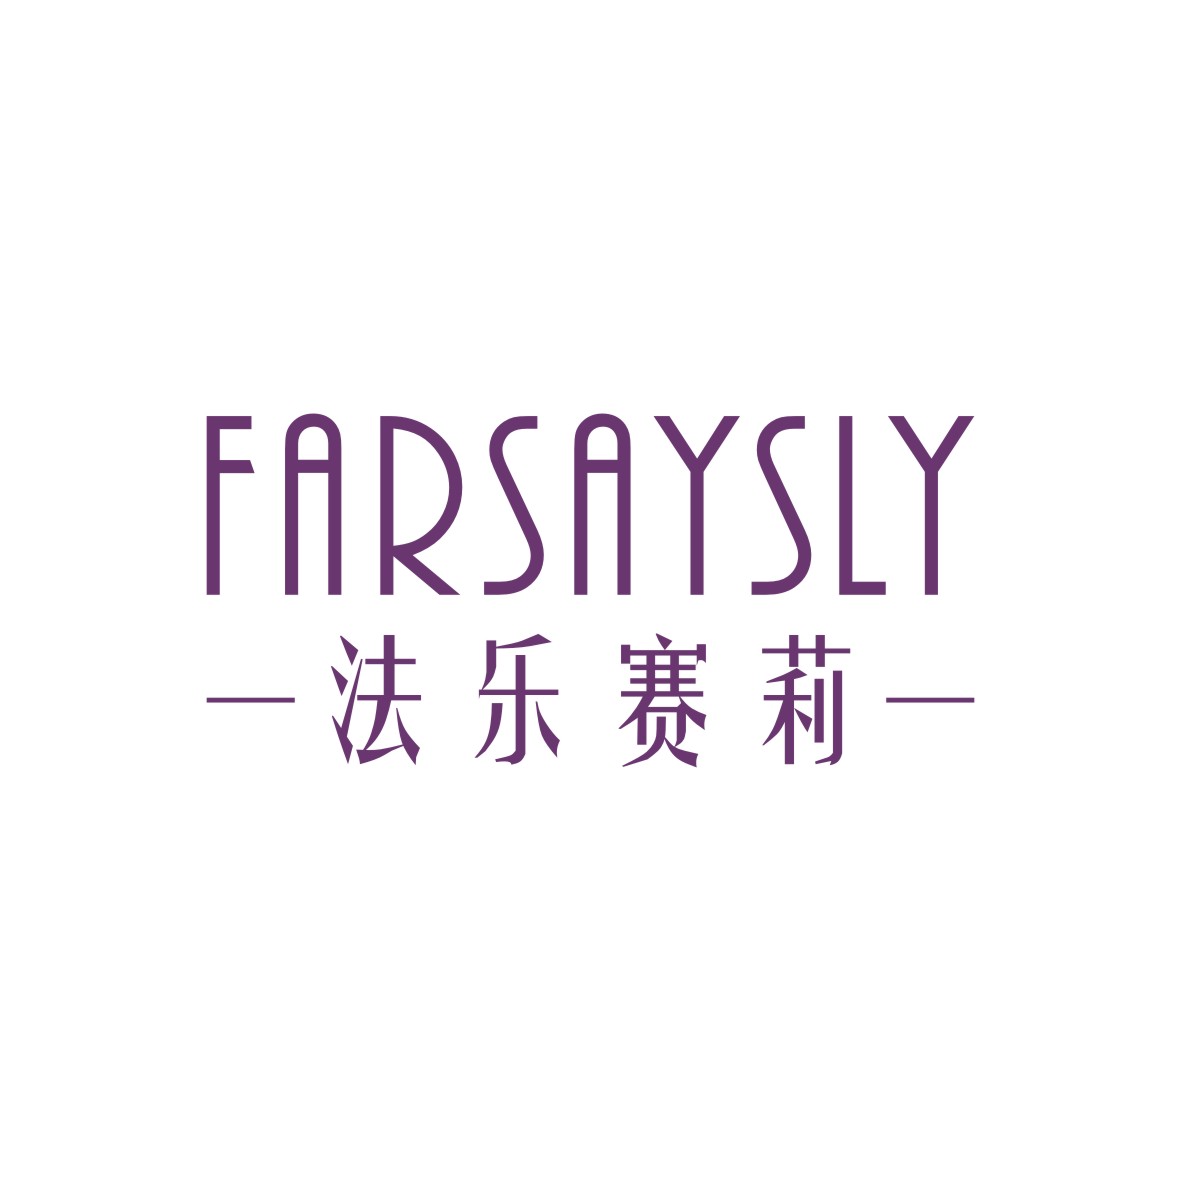 胡江礼商标法乐赛莉 FARSAYSLY（03类）多少钱？